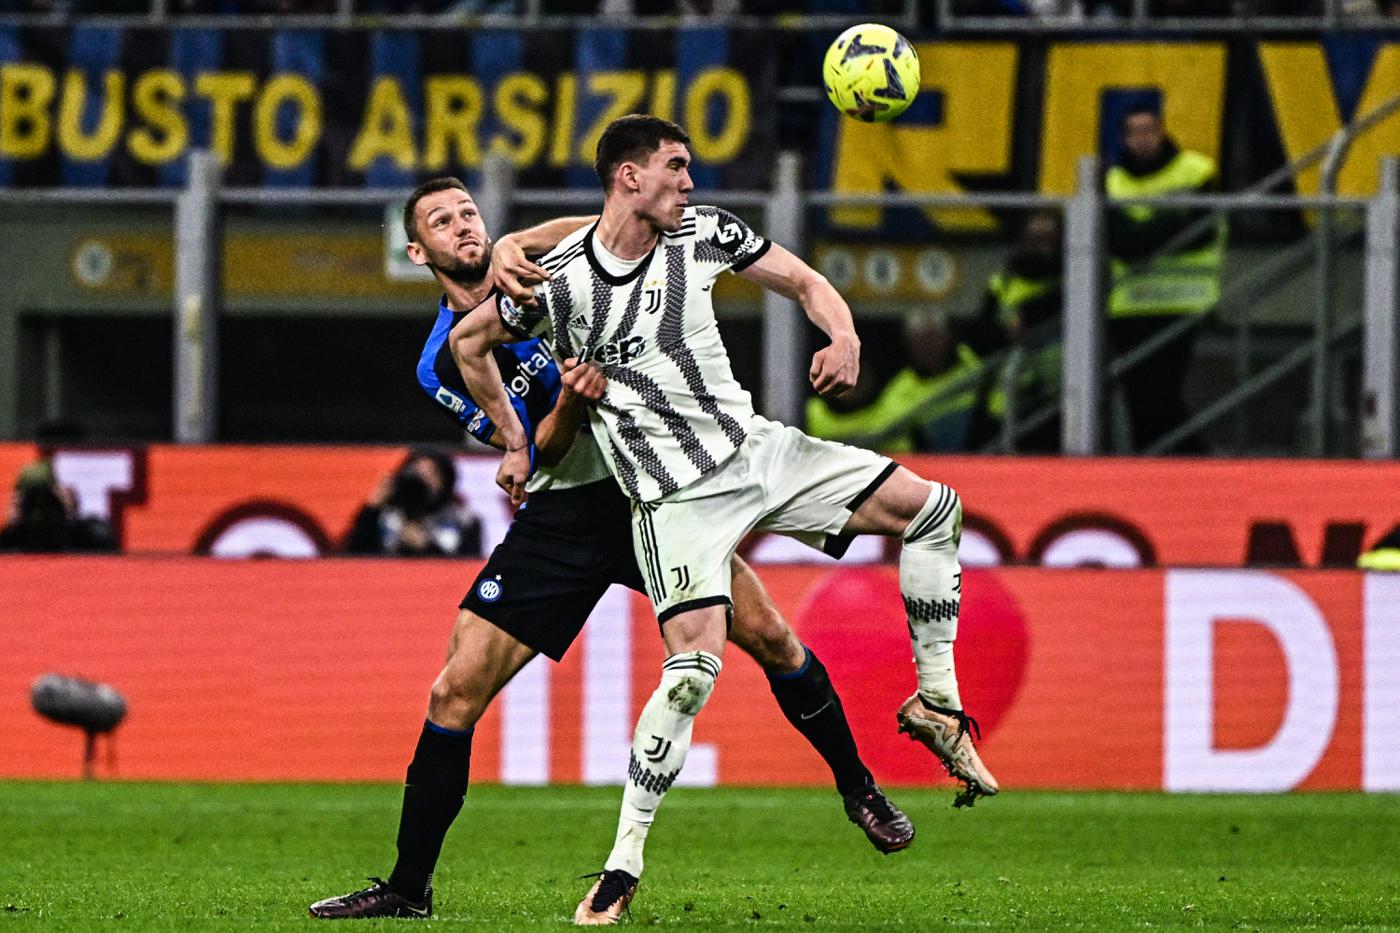 Inter - Juventus - 0-1. Italienische Meisterschaft, 27. Runde. Spielbericht, Statistik